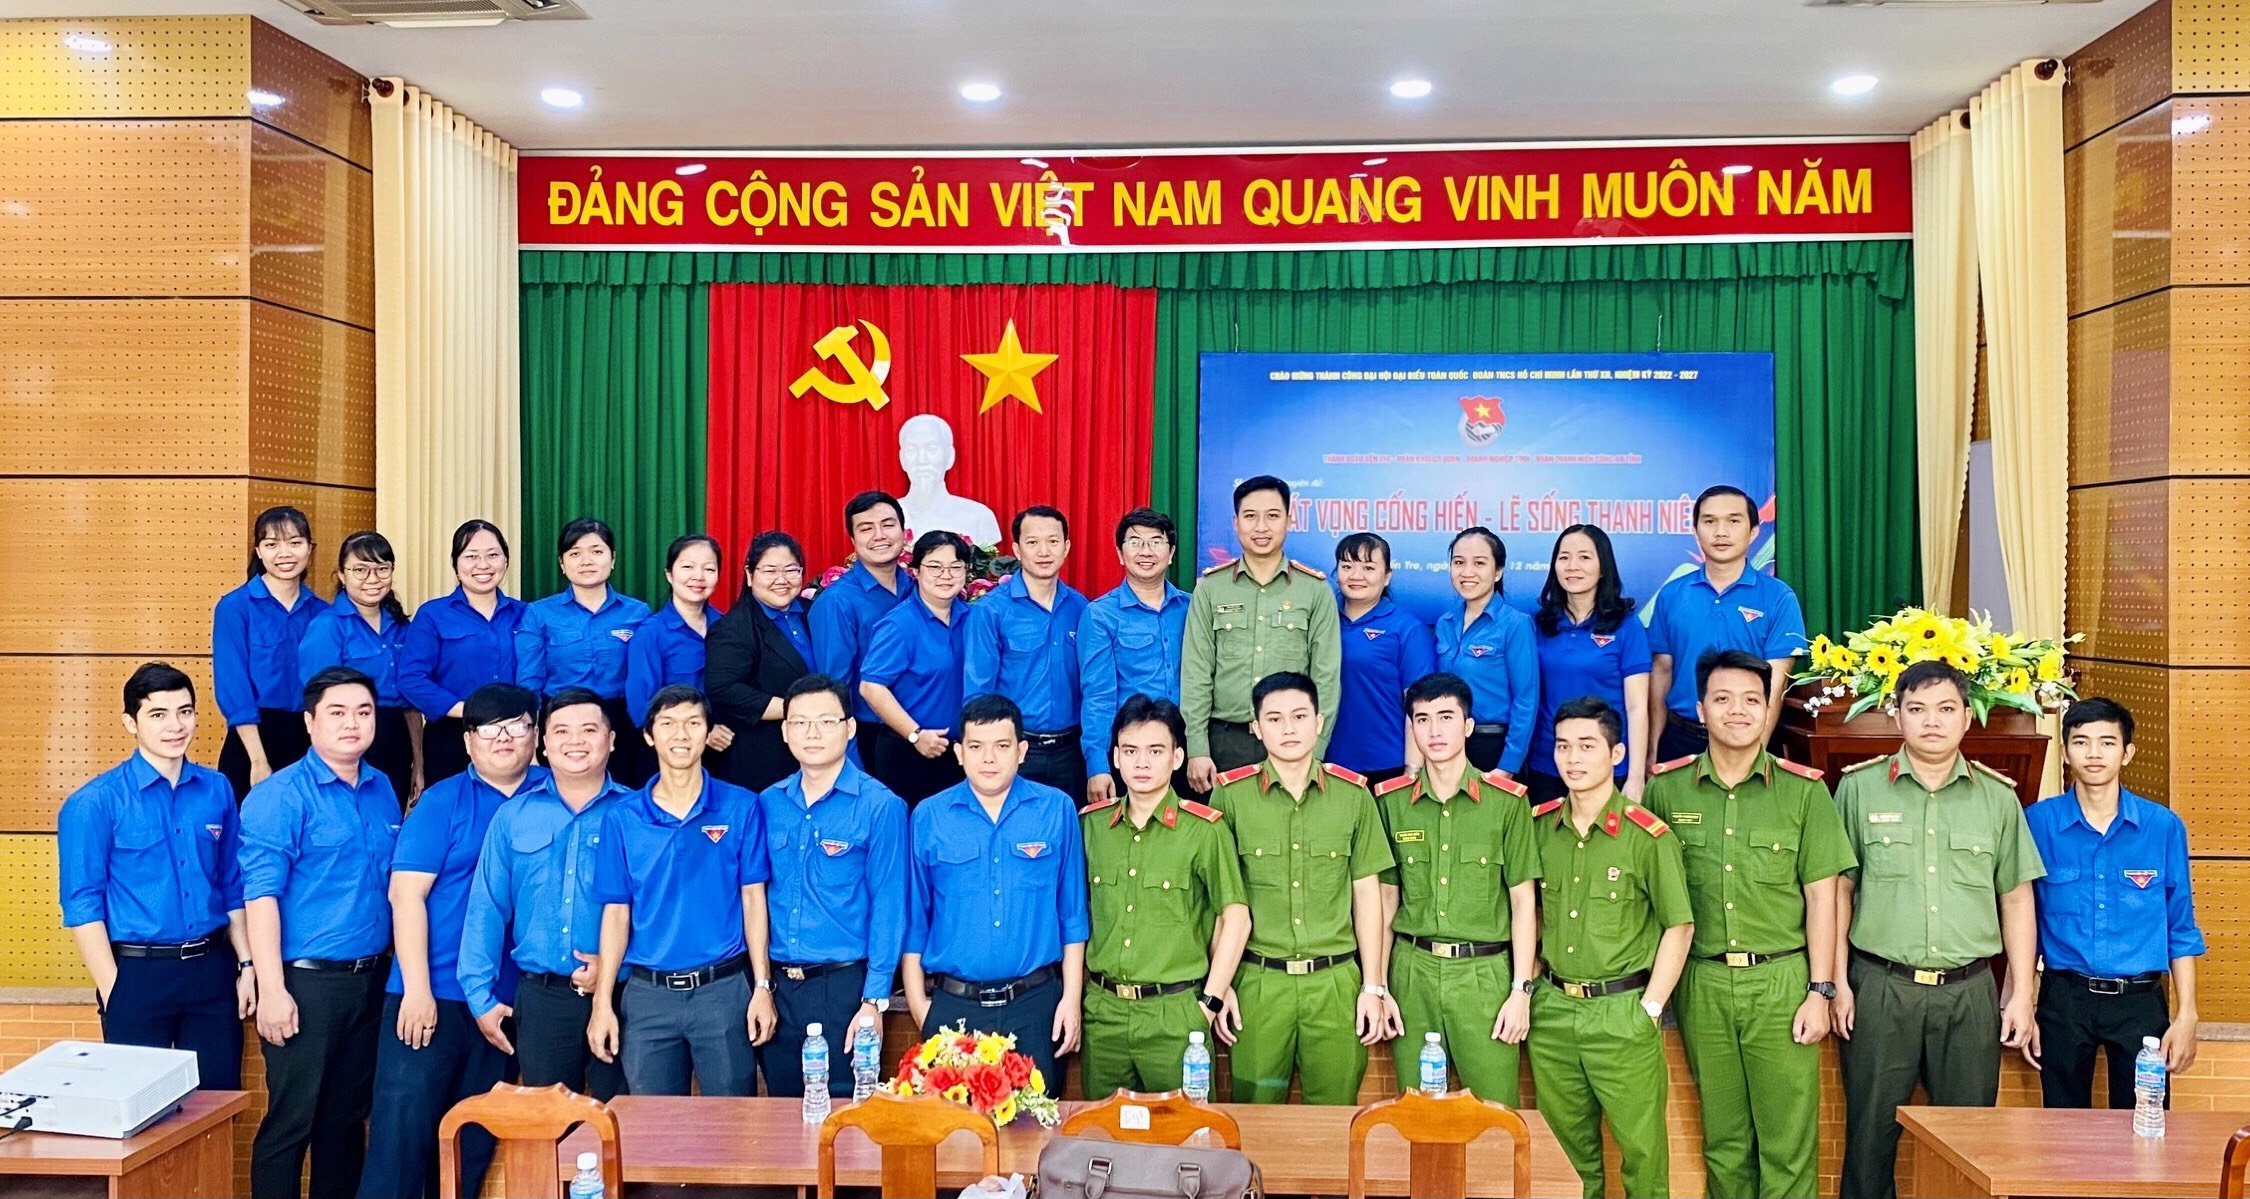 Ngày Thanh niên Đoàn khối cùng hành động chào mừng Đại hội đại biểu toàn quốc Đoàn TNCS Hồ Chí Minh lần thứ XII, nhiệm kỳ 2022 – 2027